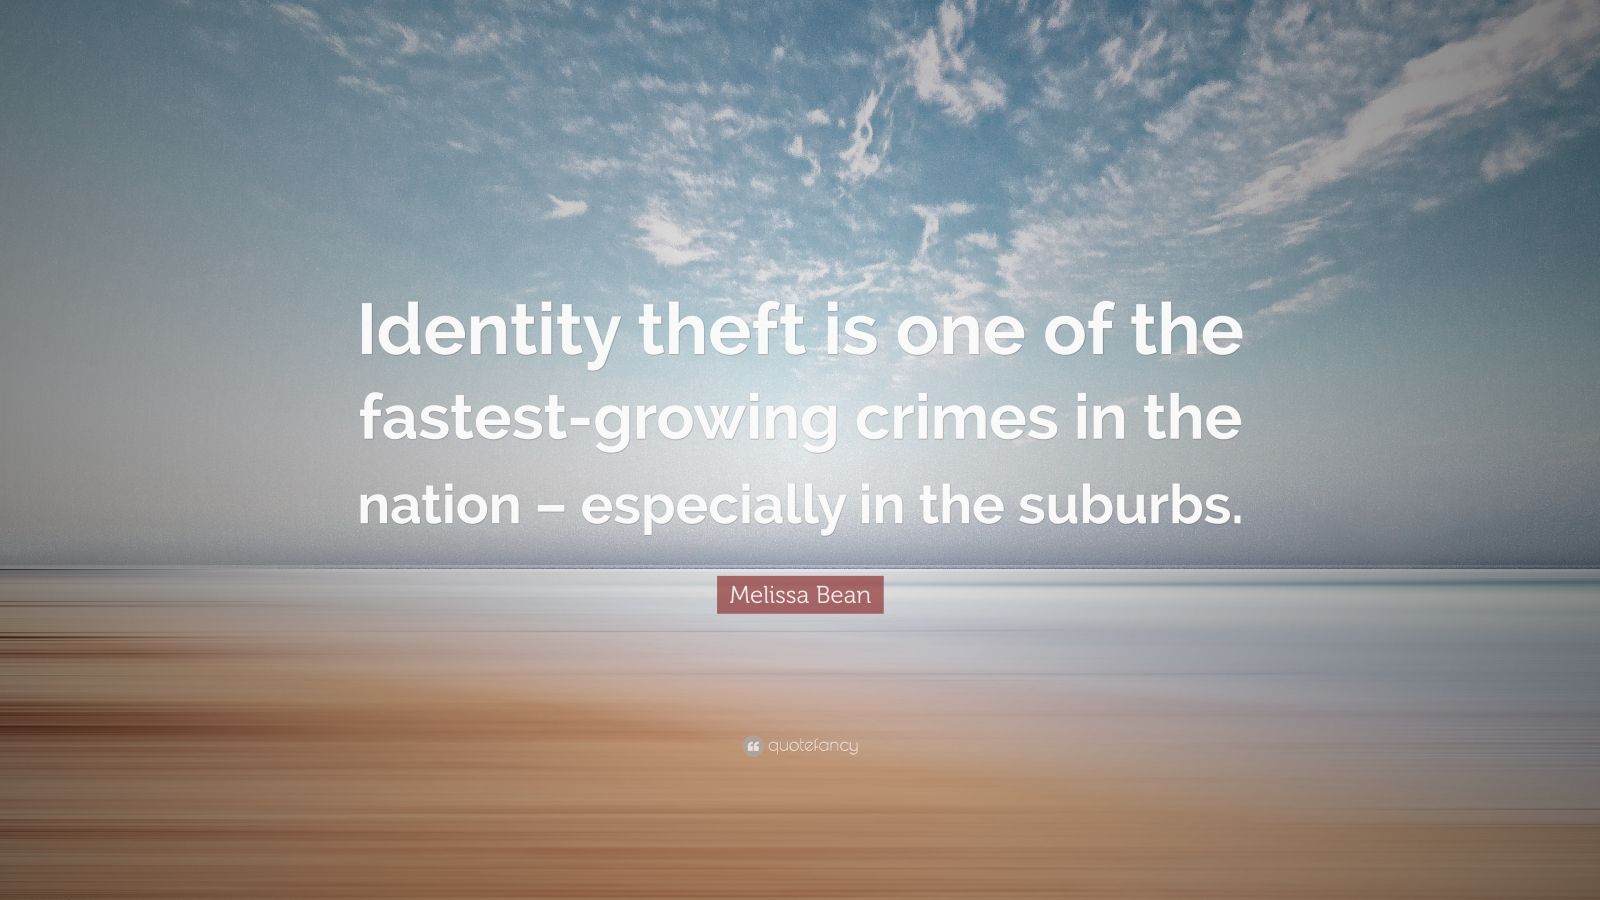 Qual è uno dei crimini in più rapida crescita?